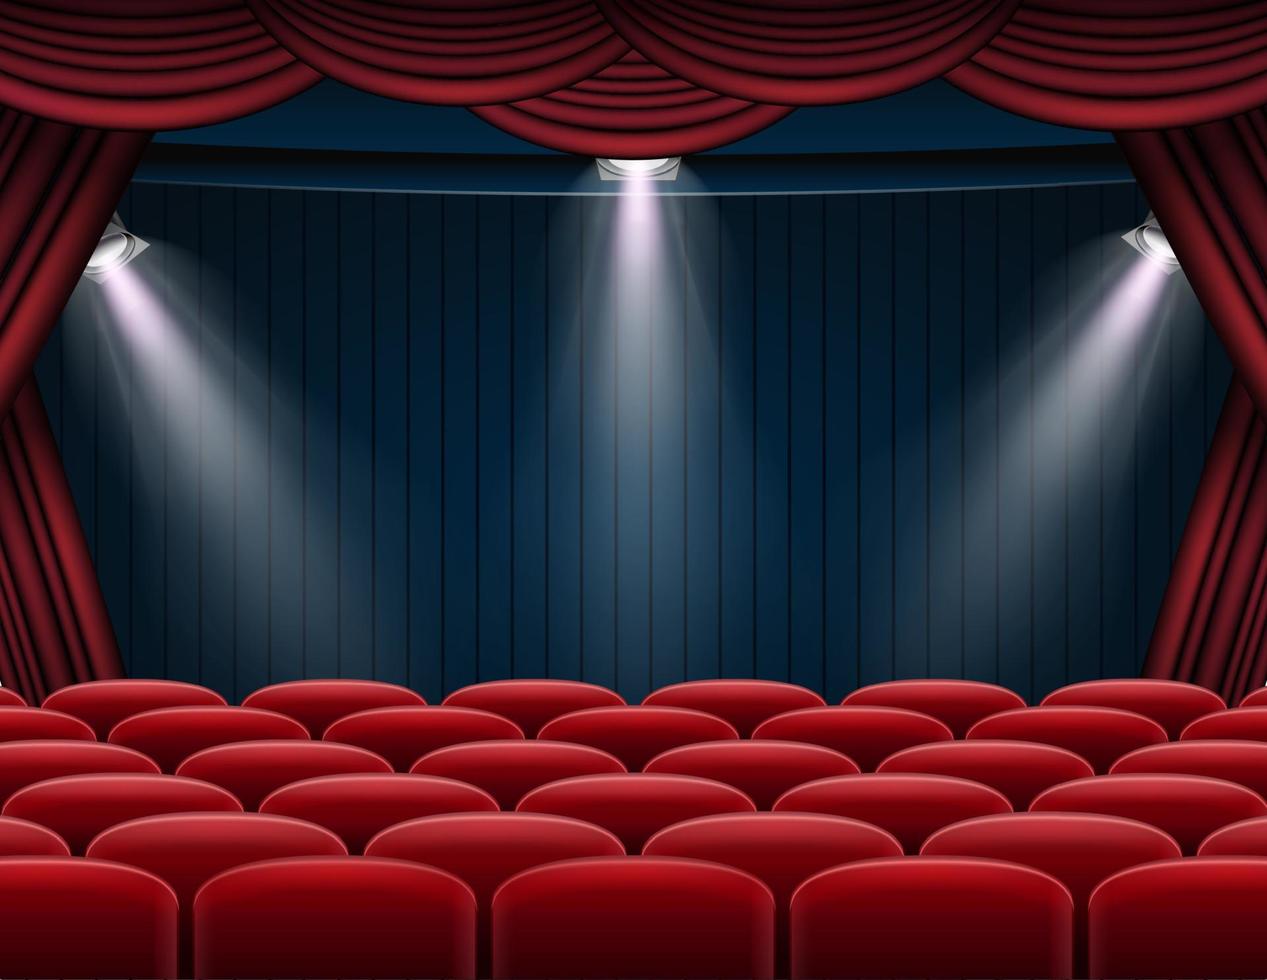 Premium rote Vorhänge Bühnen-, Theater- oder Opernhintergrund mit Scheinwerfer vektor